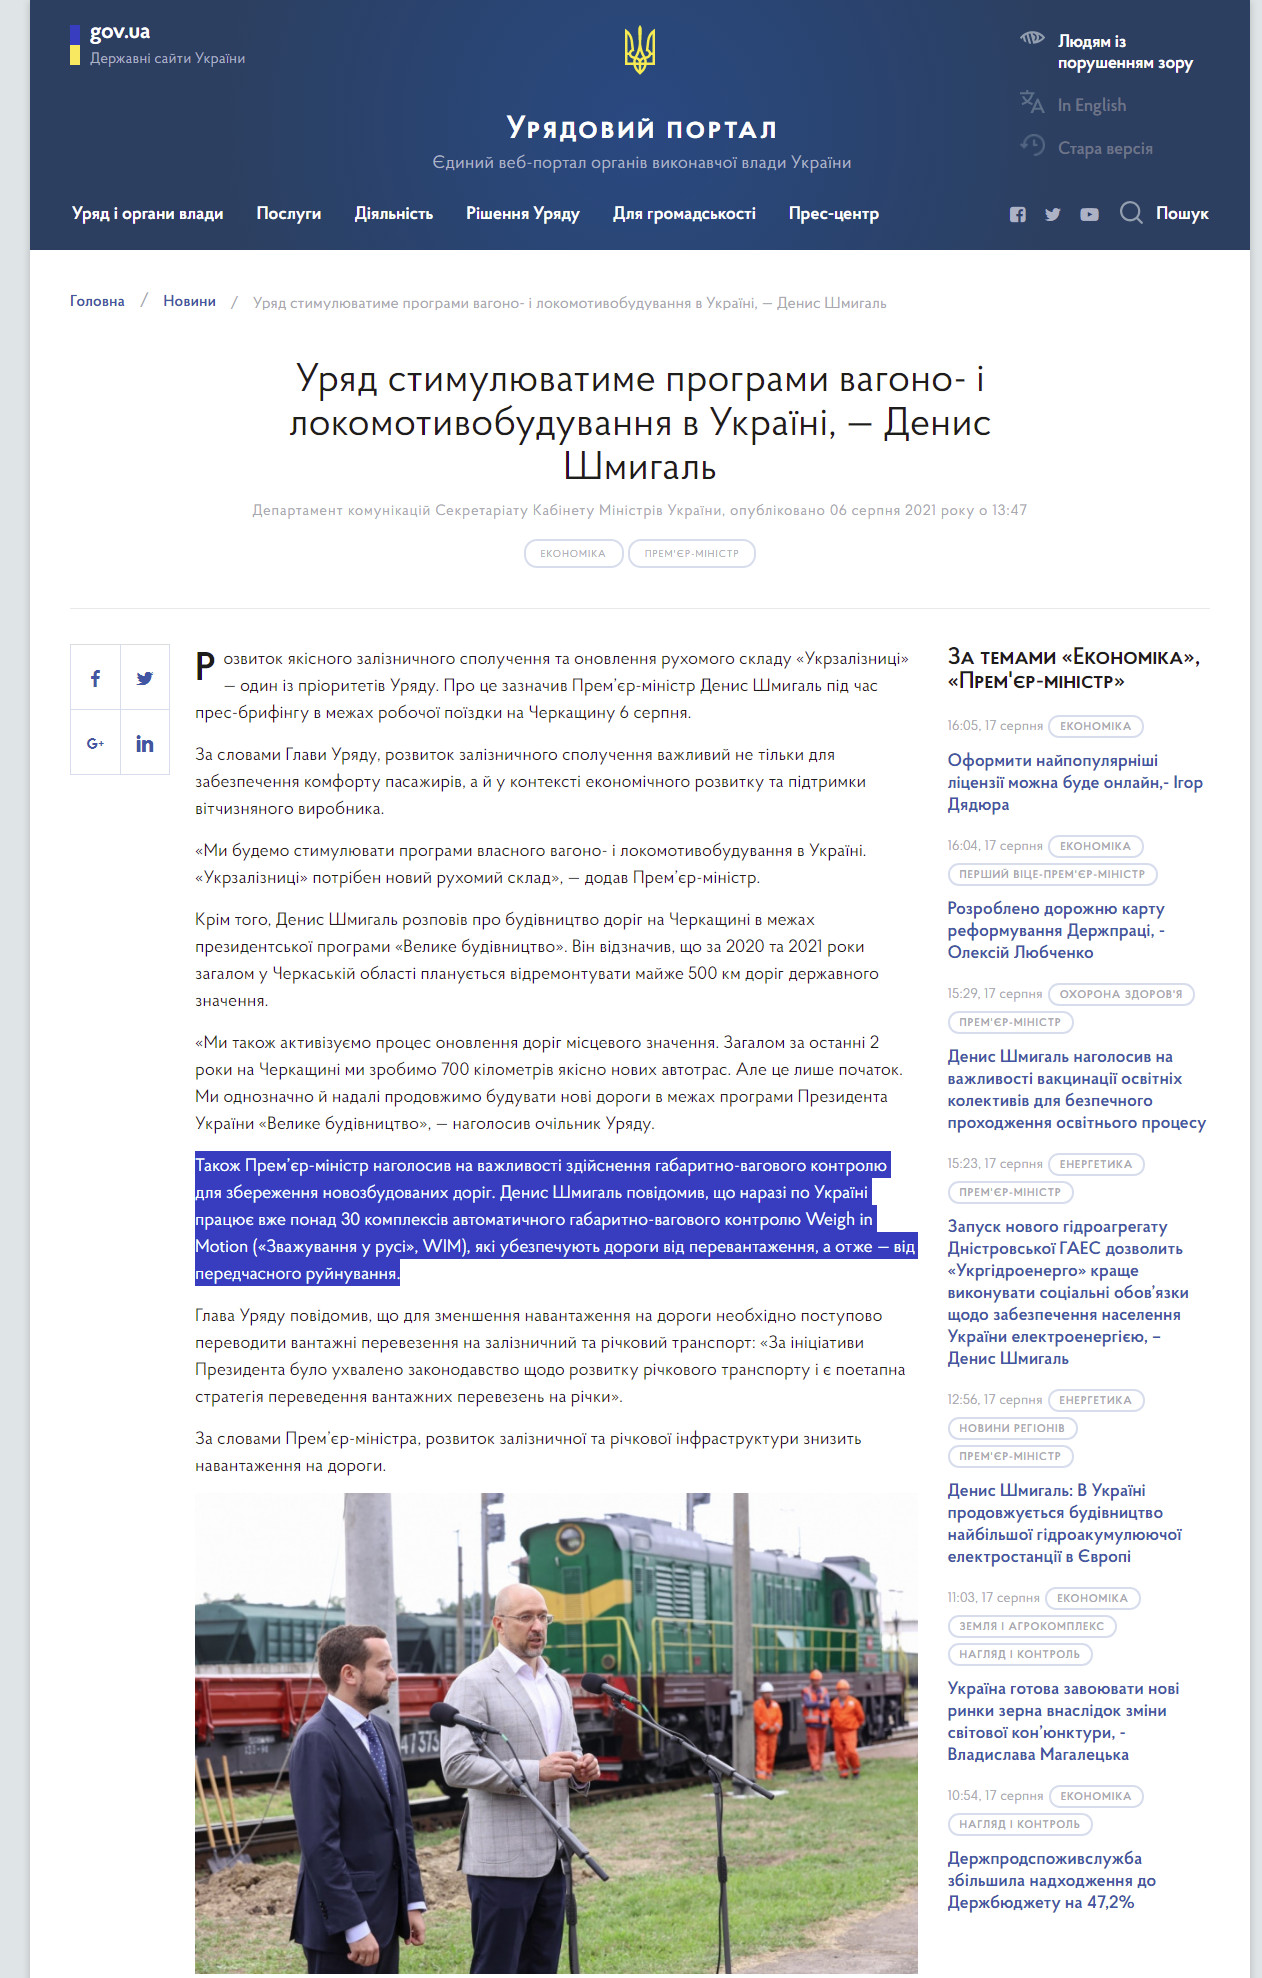 https://www.kmu.gov.ua/news/uryad-stimulyuvatime-programi-vagono-i-lokomotivobuduvannya-v-ukrayini-denis-shmigal